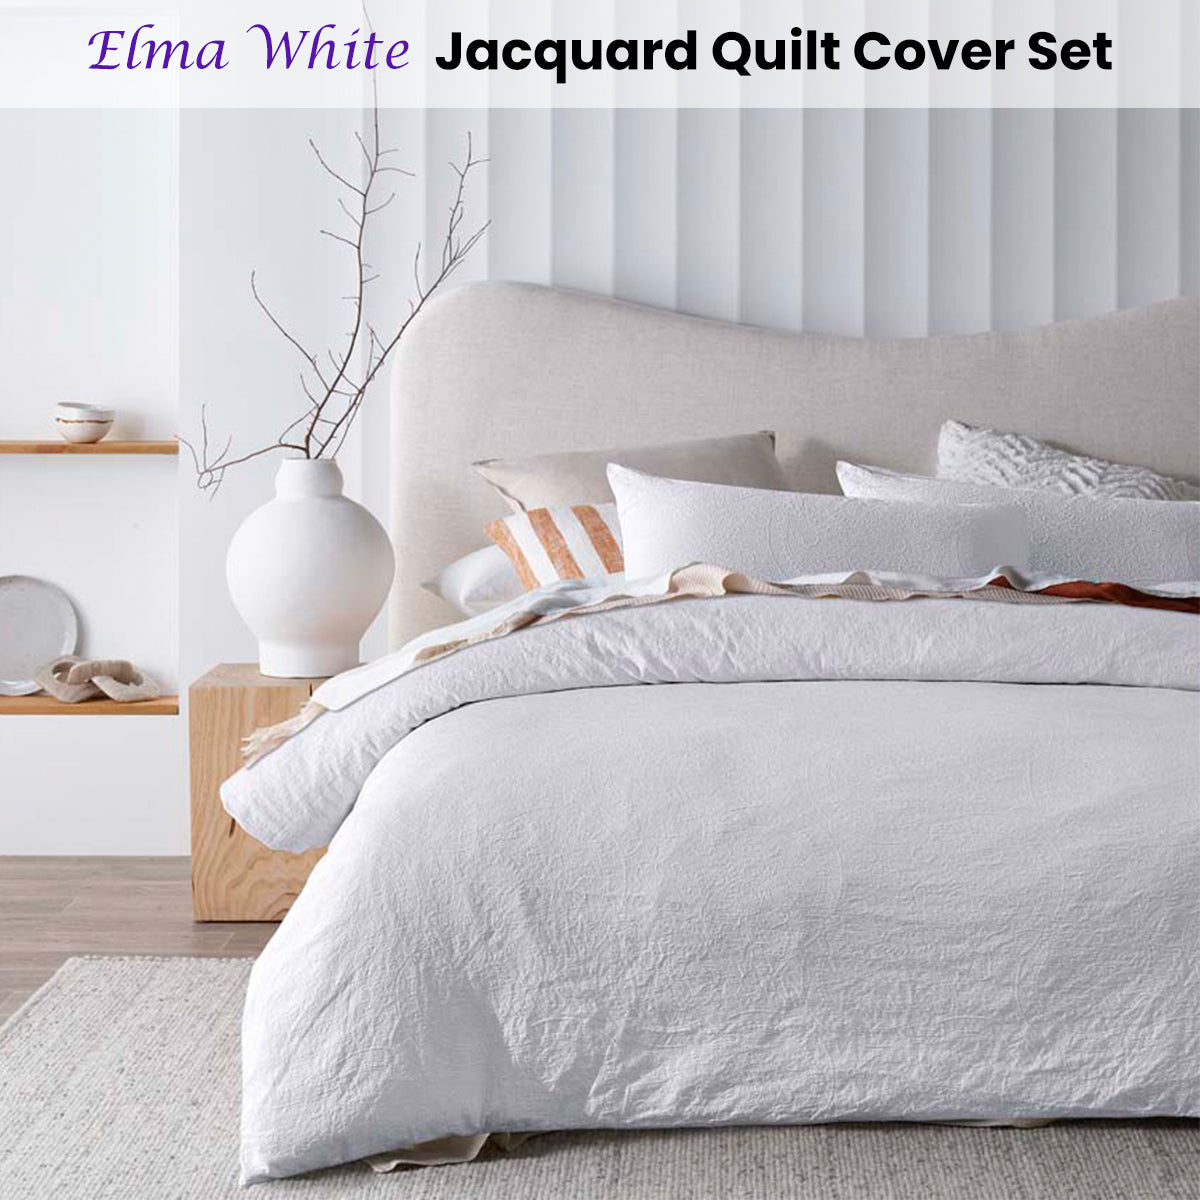 Queen ElmaJacquard Quilt Cover Set - White